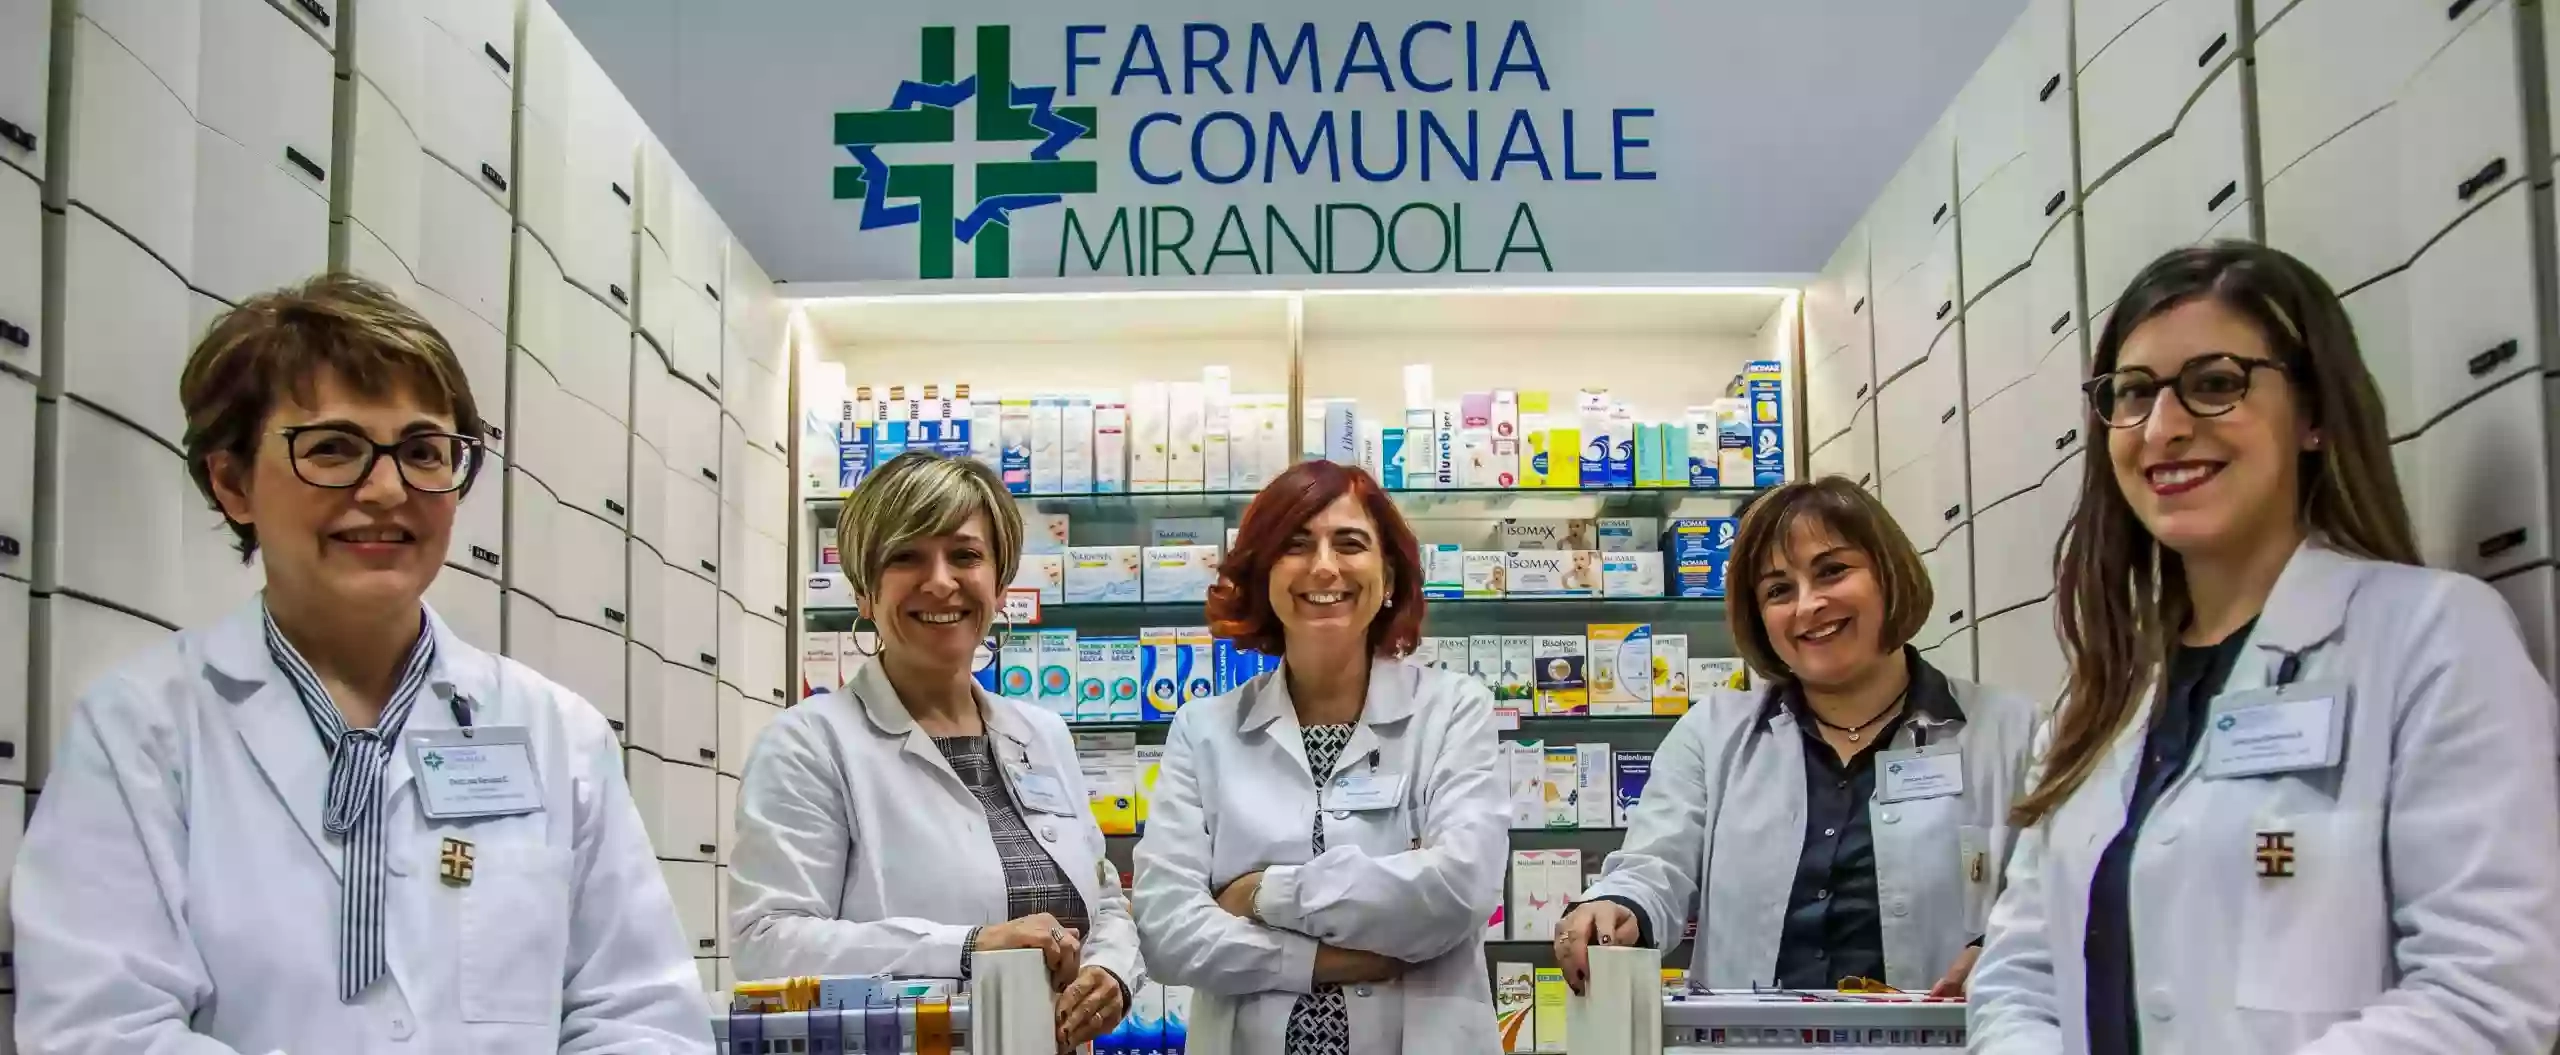 Farmacia Comunale Mirandola